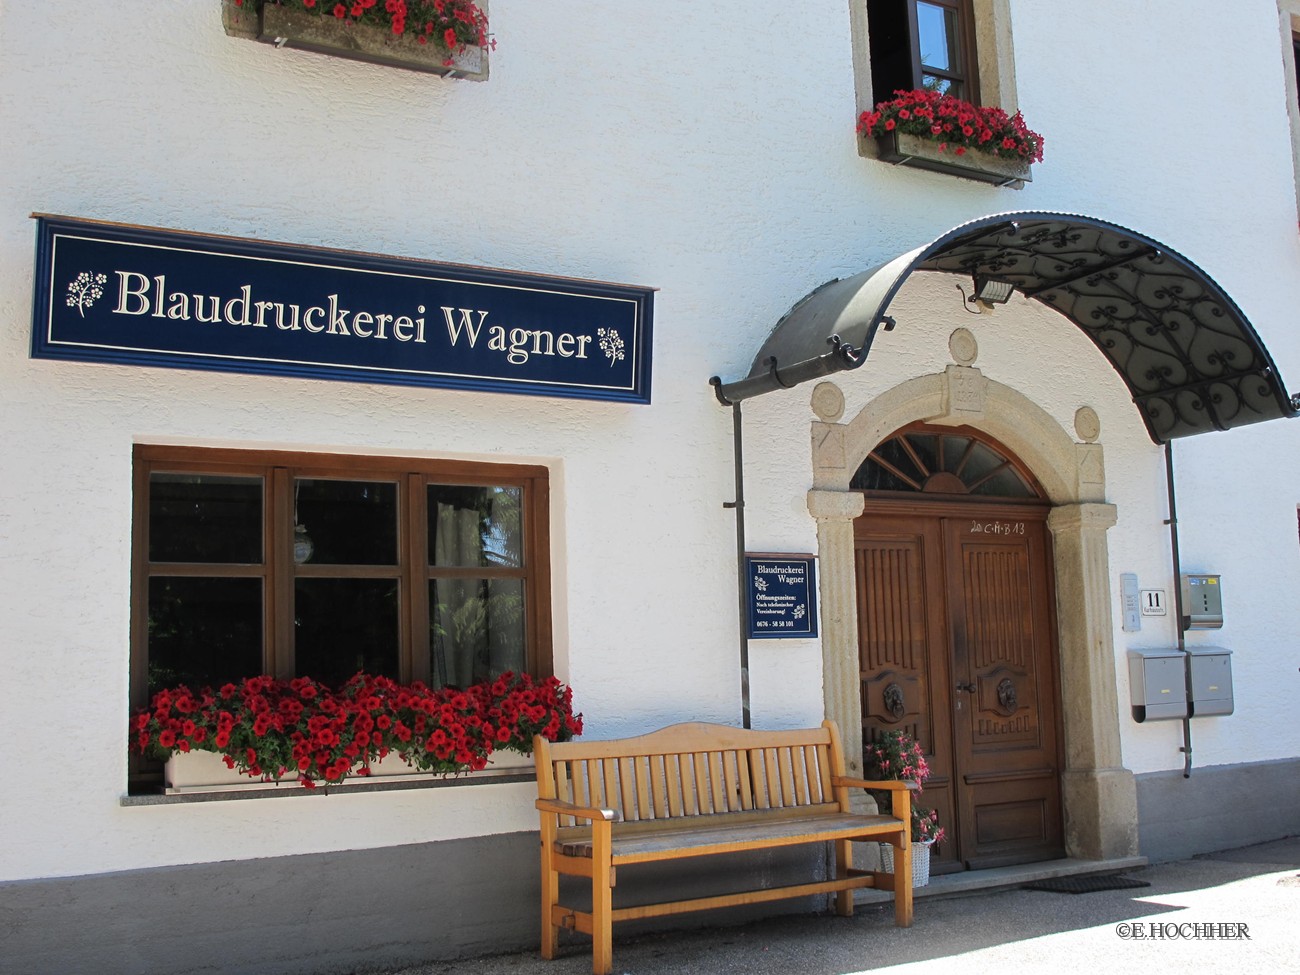 Blaudruckerei Wagner